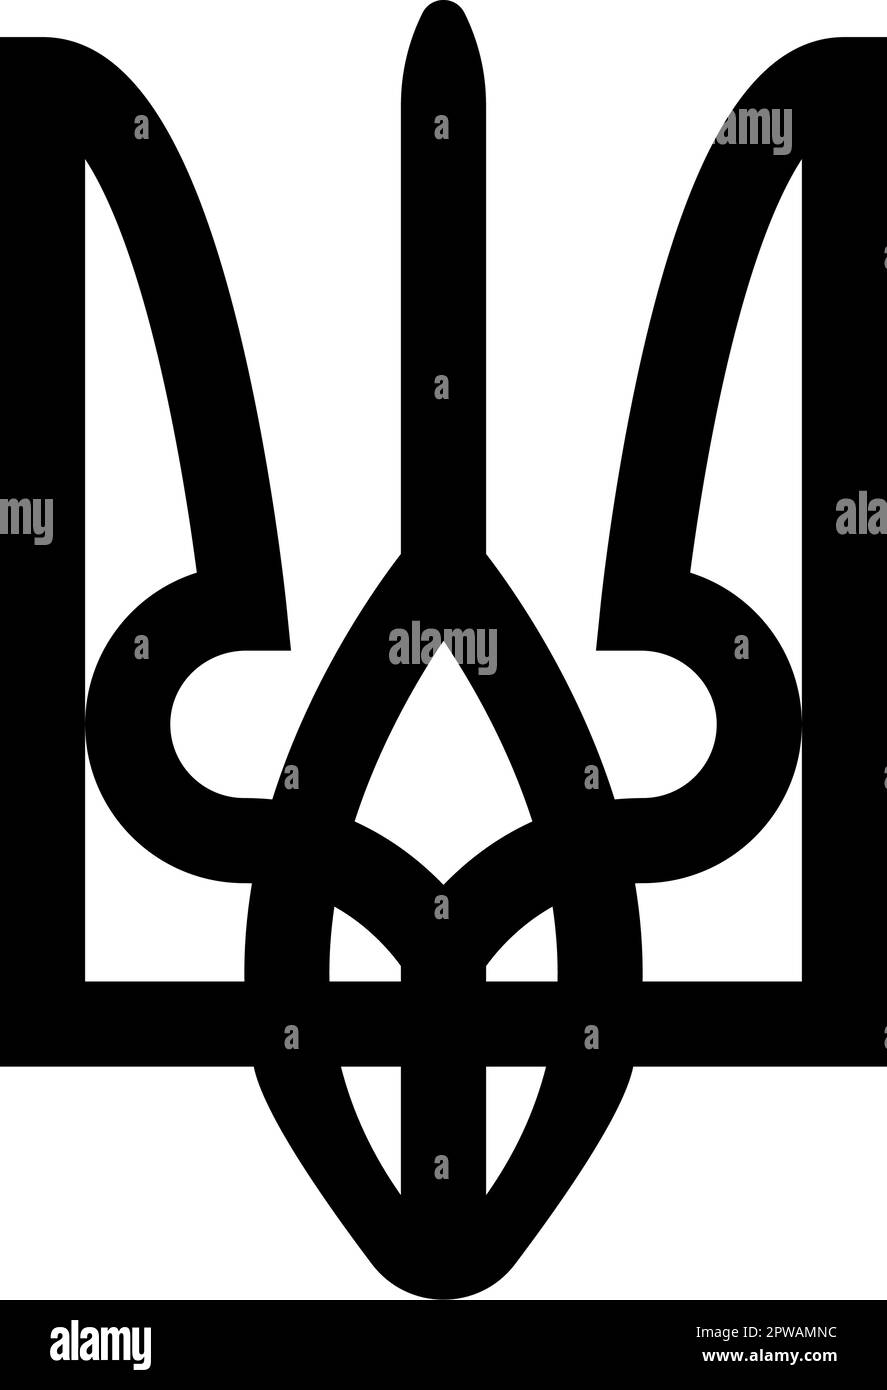 Ukraine blason emblème national sceau symbole de l'état ukrainien signe trident tryzub icône noir couleur vecteur illustration image style plat Illustration de Vecteur